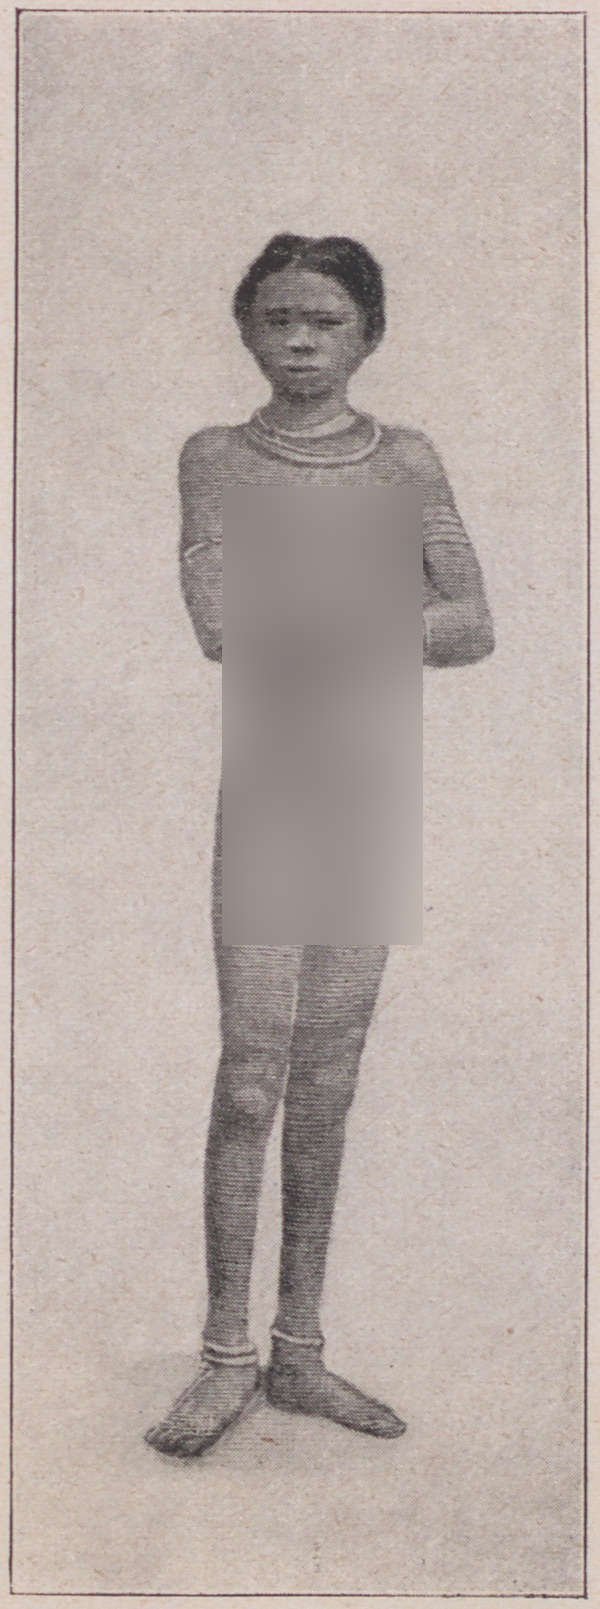 Fotografie, die eine stehende unbekleidete Frau zeigt (ethnologischer Kontext) (Magnus-Hirschfeld-Gesellschaft Public Domain Mark)